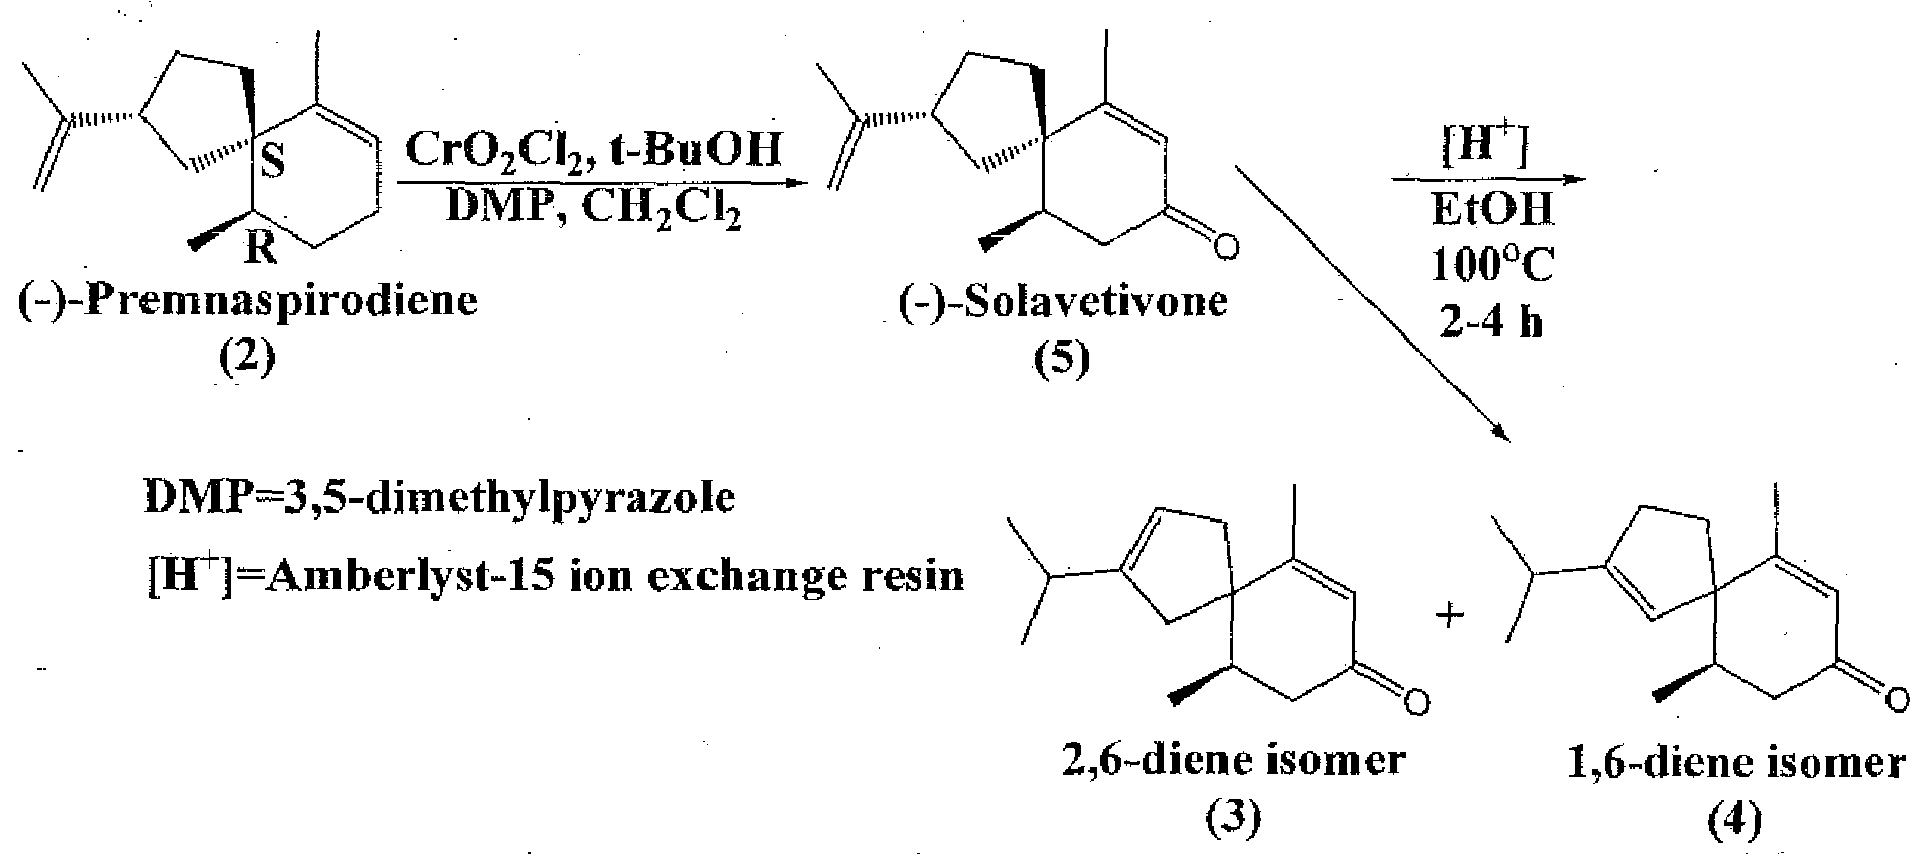 Novel fragrance and methods for production of 5-epi-beta-vetivone, 2-isopropyl-6,10-dimethyl-spiro[4.5]deca-2,6-dien-8-one, and 2-isopropyl-6,10-dimethyl-spiro[4.5]deca-1,6-dien-8-one